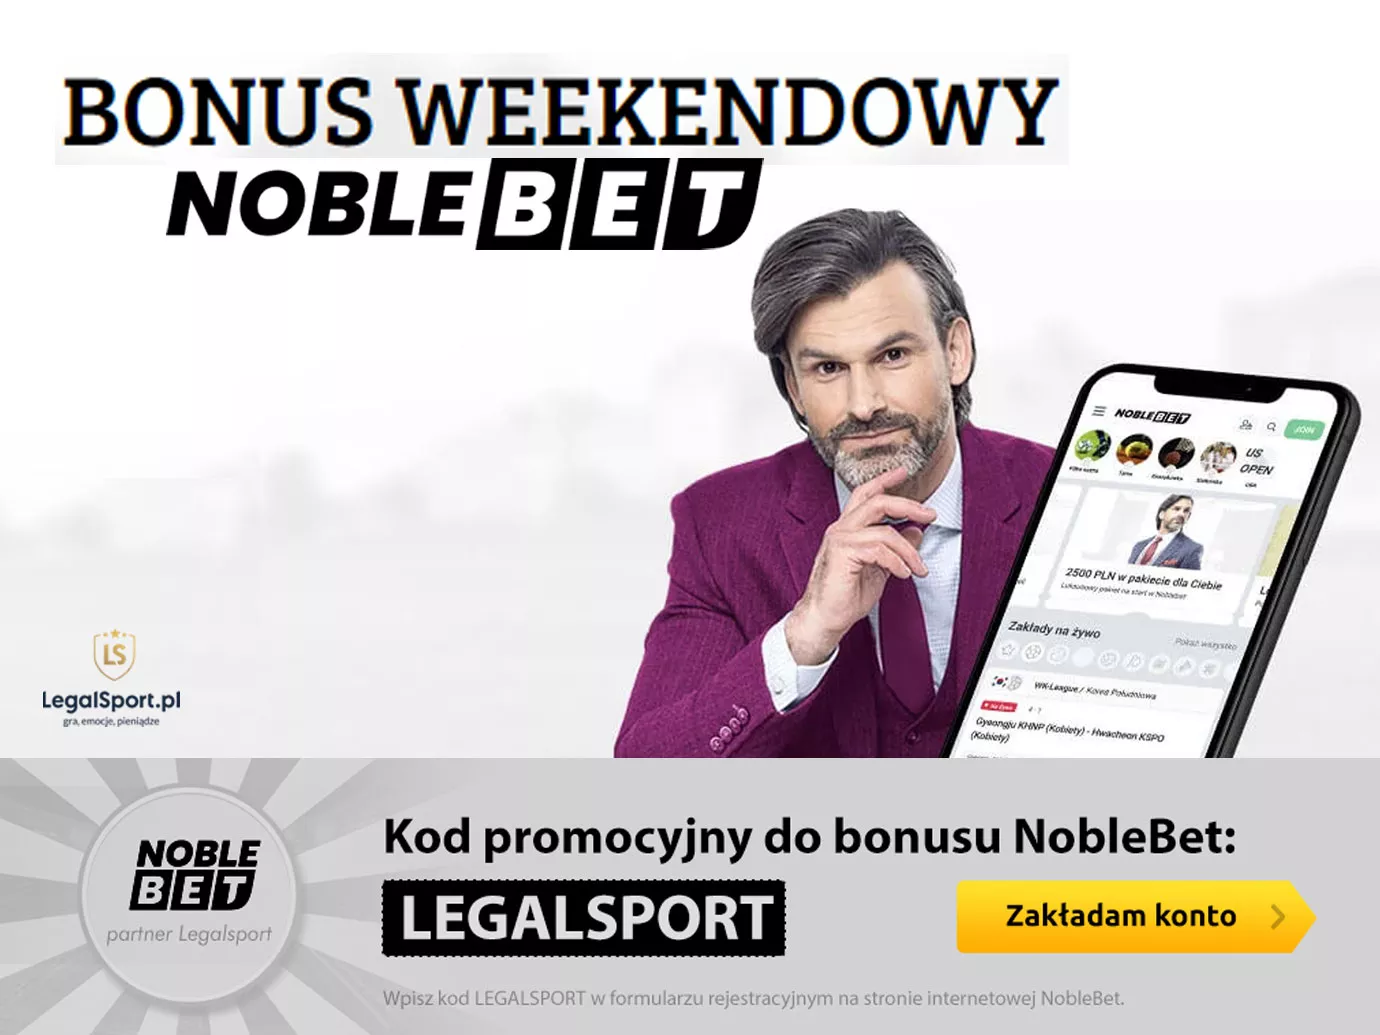 Weekendowy bonus w Noblebet